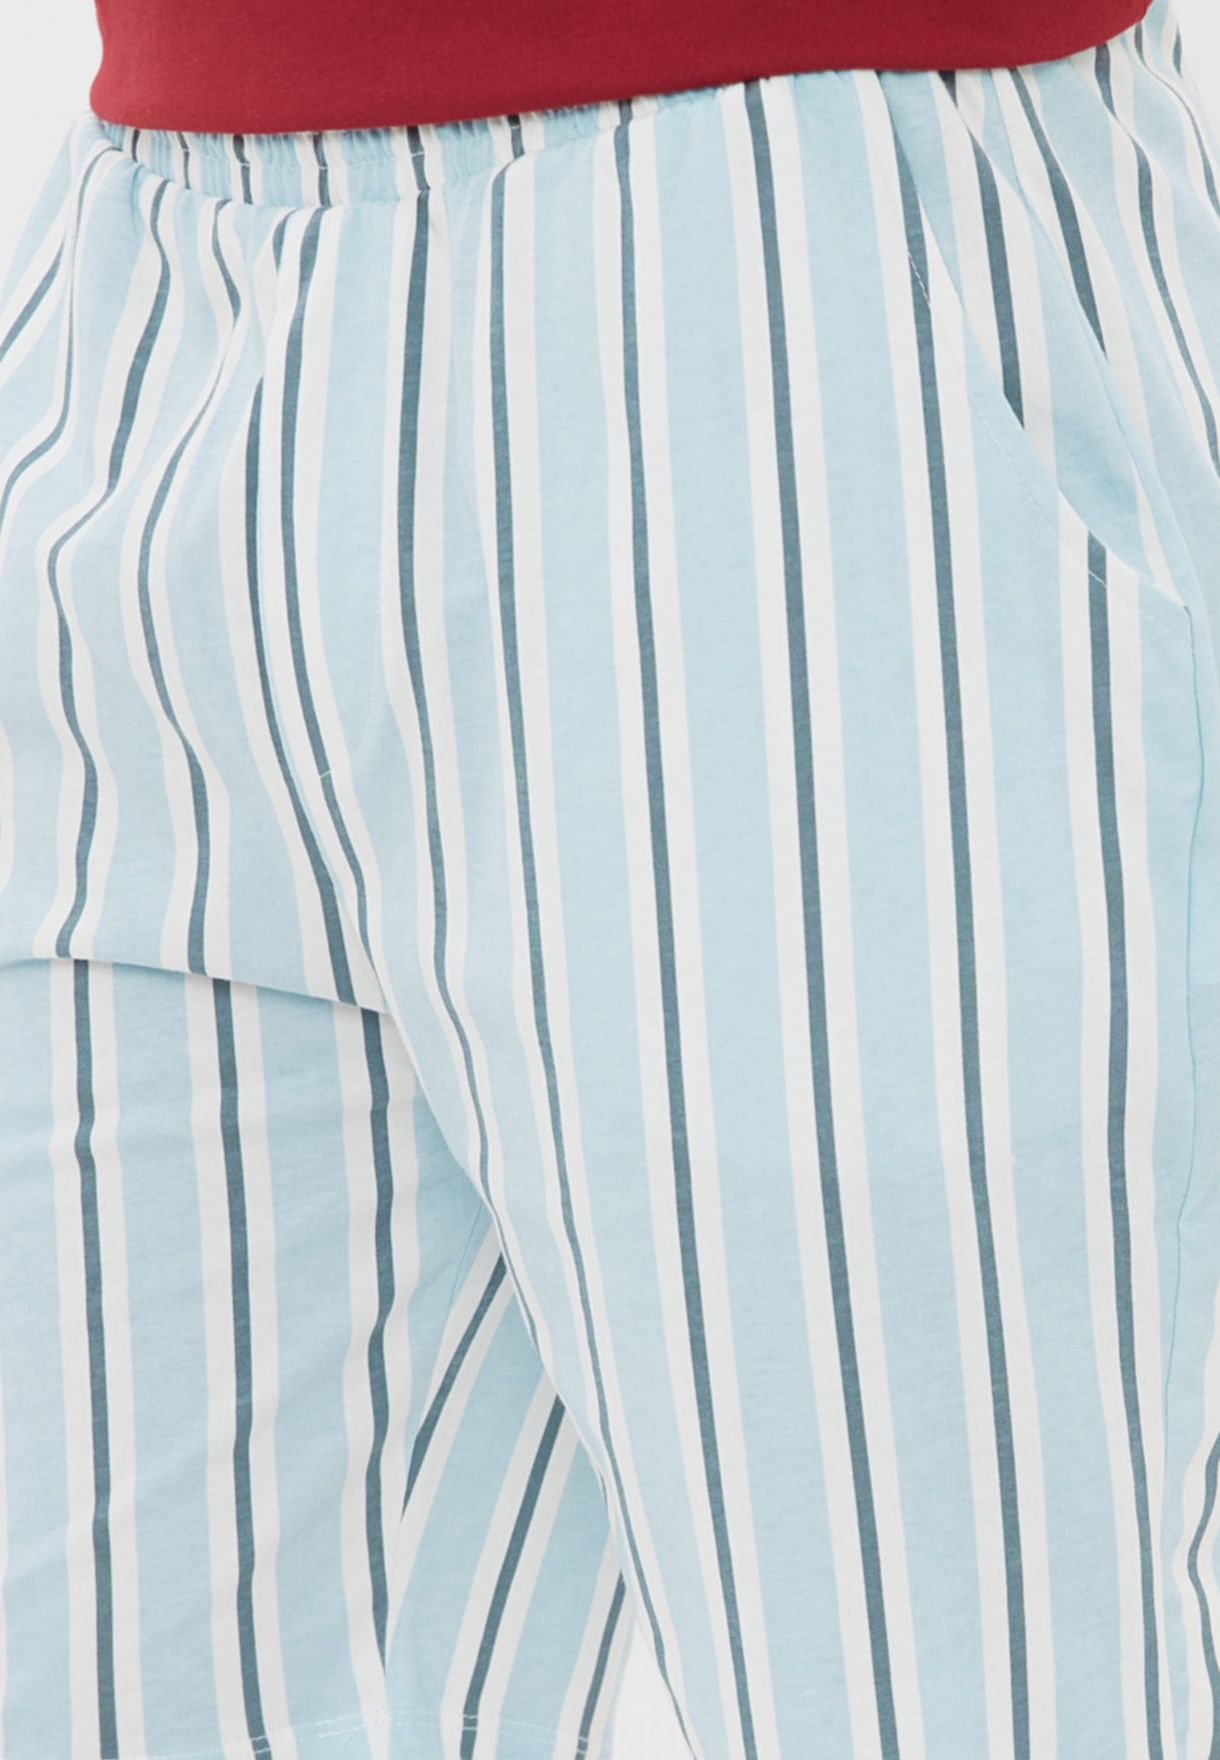 Striped Pyjama Set